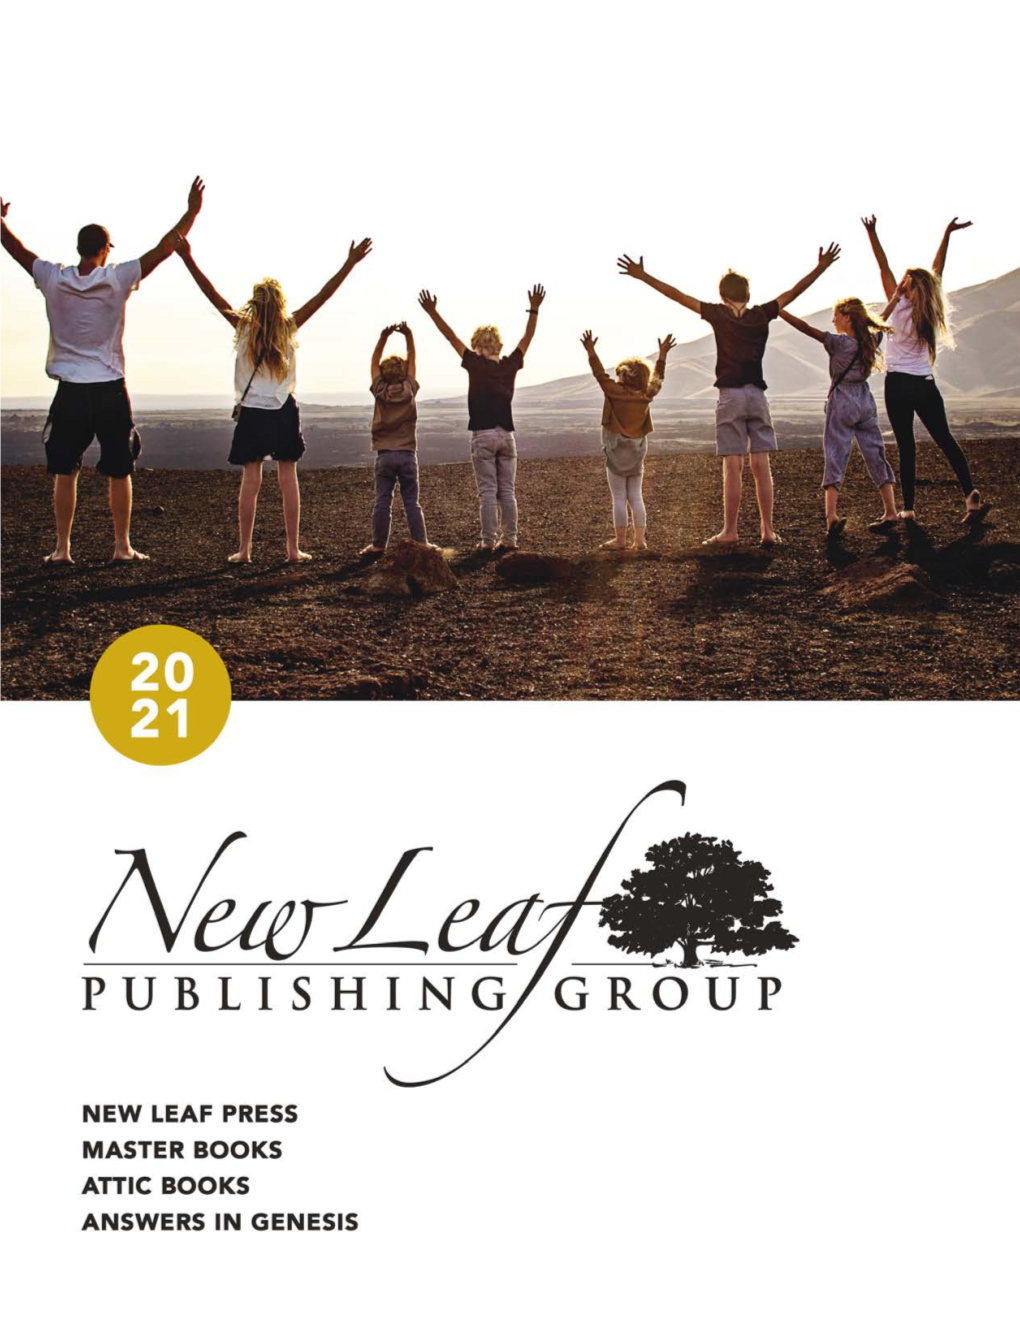 2021 New Leaf Publishing Group Catalog